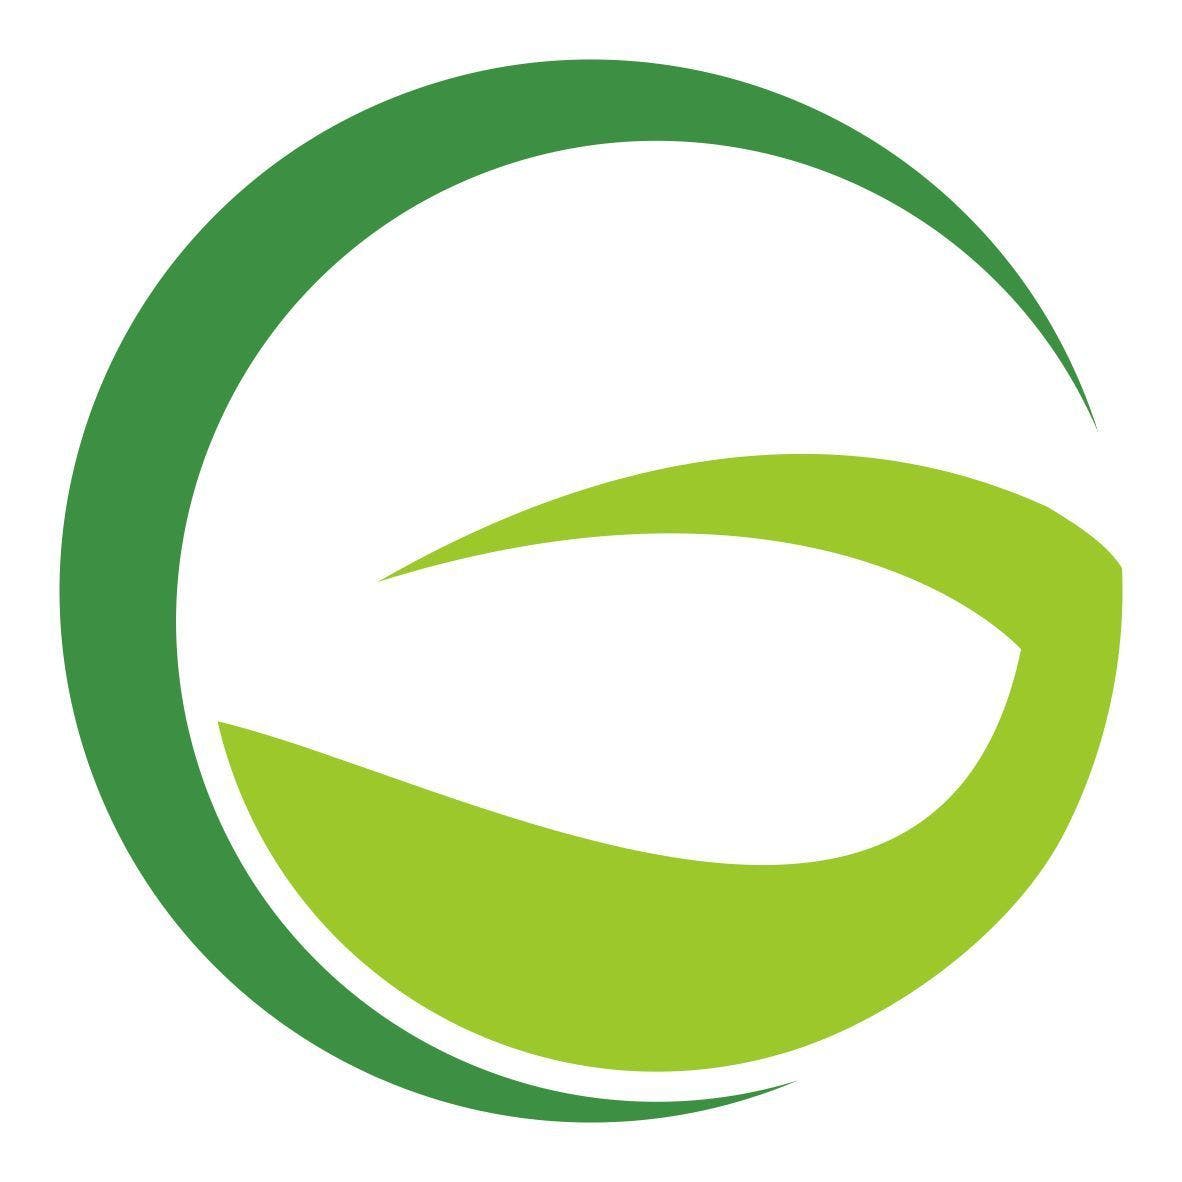 Ооо зеленые линии. ООО Green line. Зеленая линия. Зеленая линия логотип. Компании с зеленым логотипом.